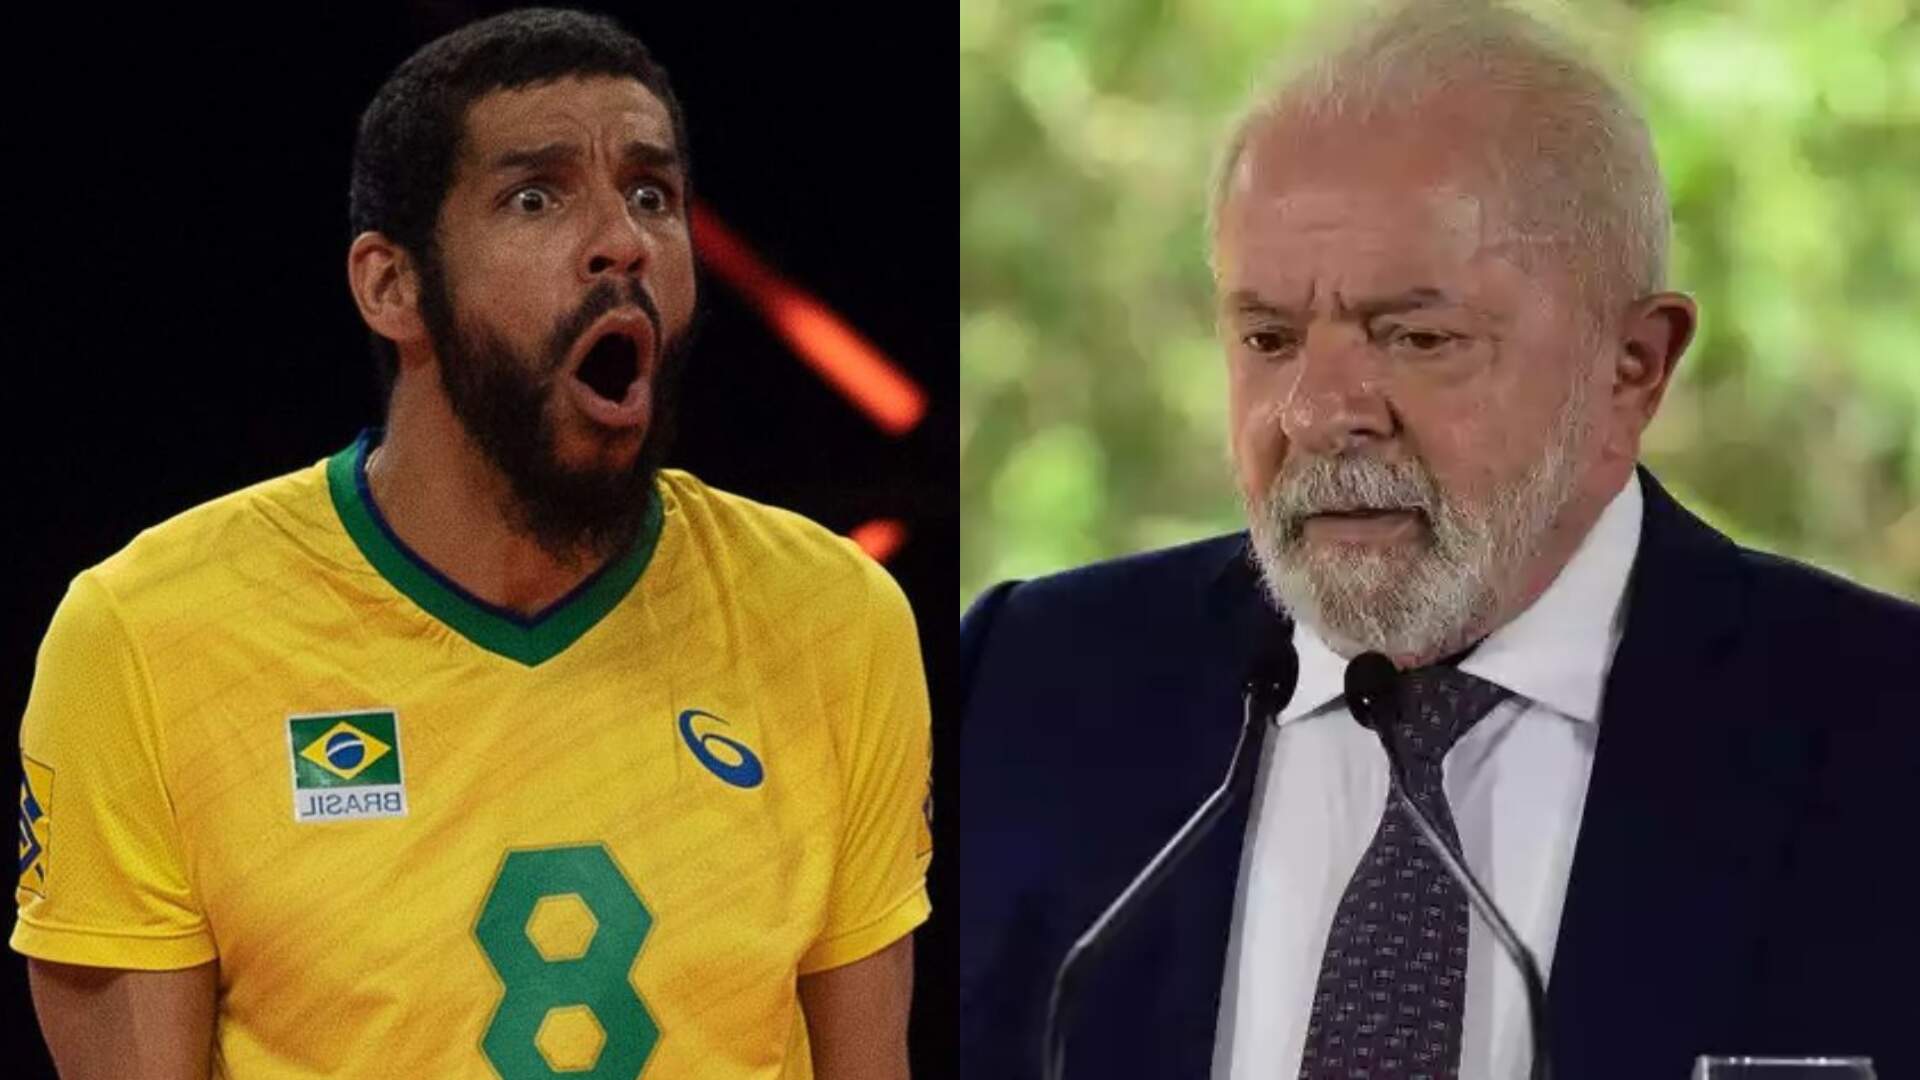 Wallace de Souza, ex-jogador da Seleção, sugere “tiro na cara” de Lula em publicação - Metropolitana FM